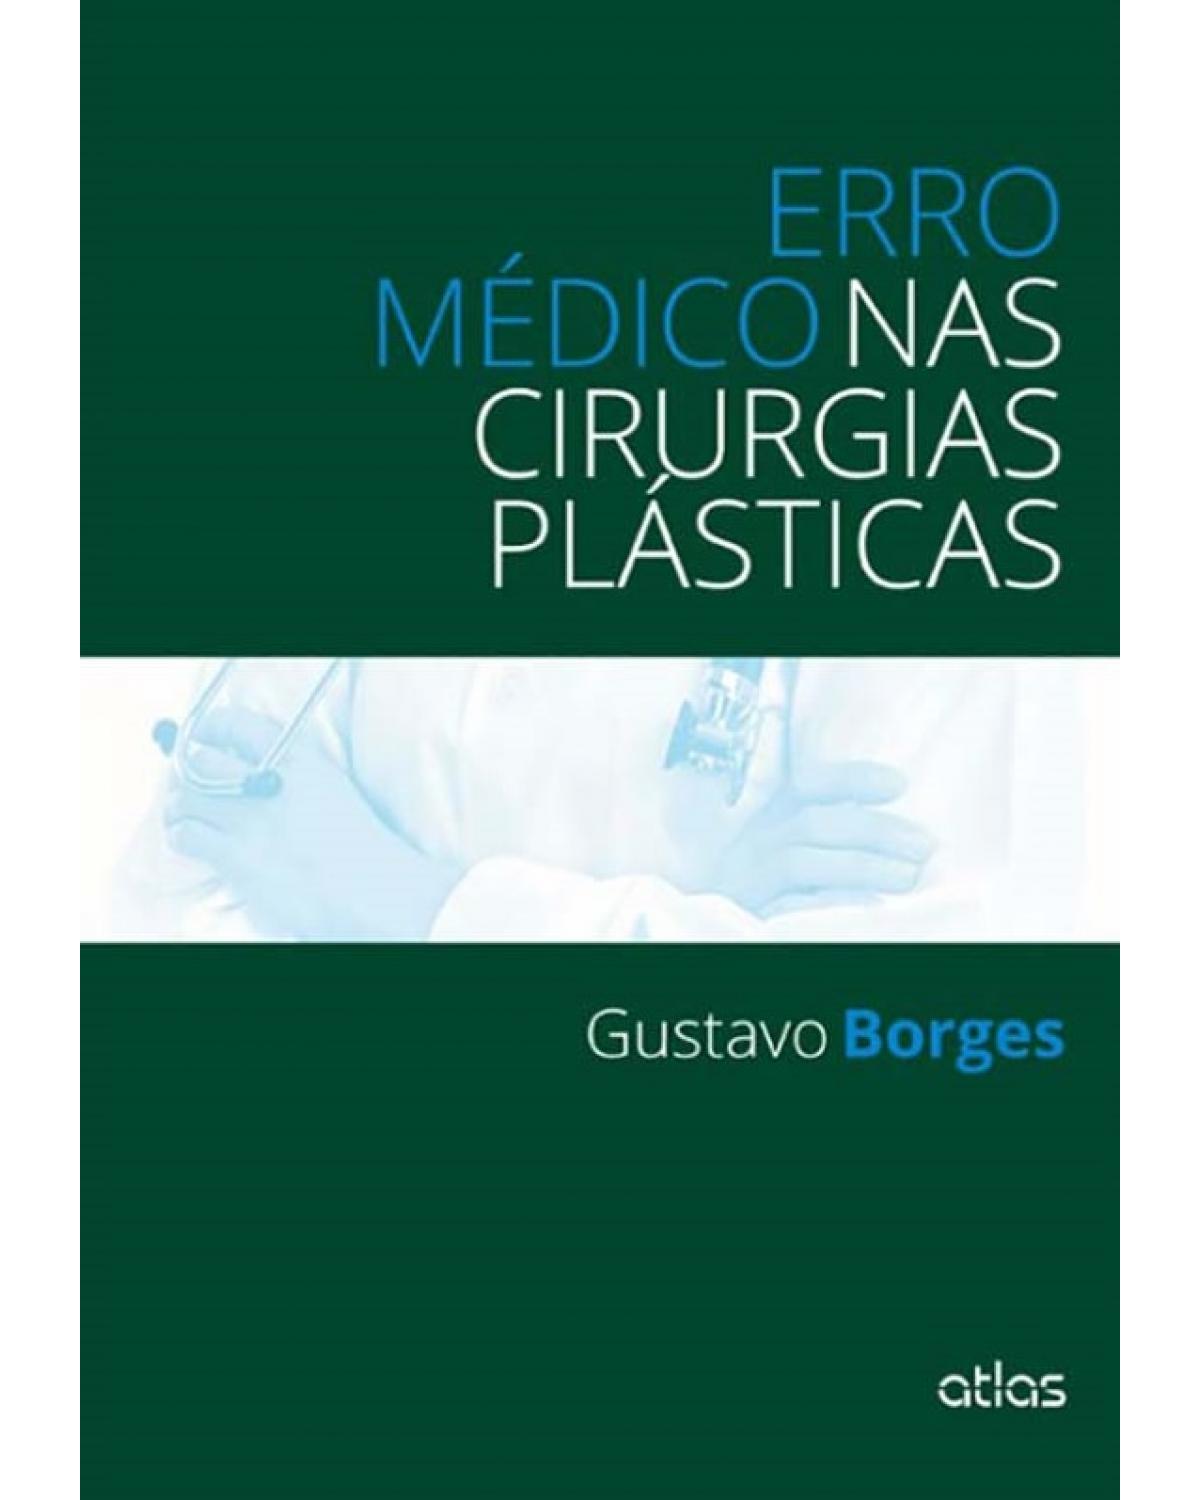 Erro médico nas cirurgias plásticas - 1ª Edição | 2014